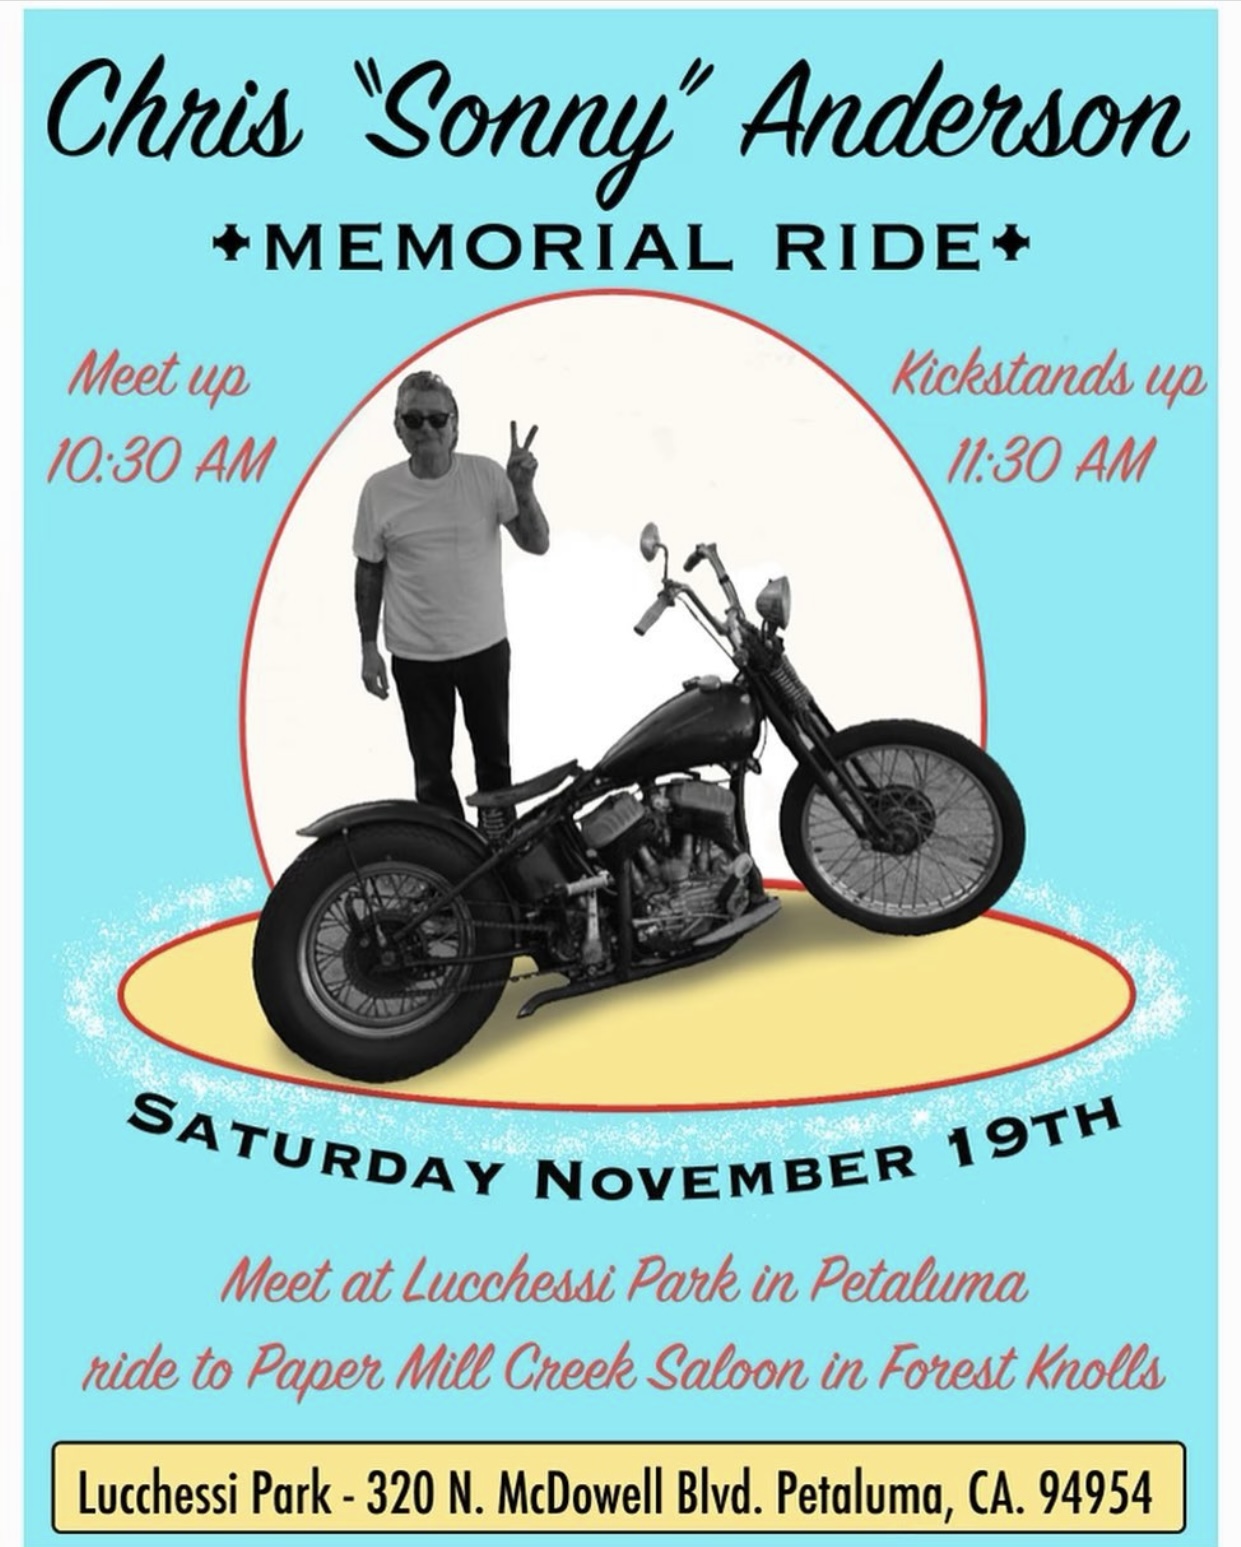 Chris Sonny Anderson Memorial Ride